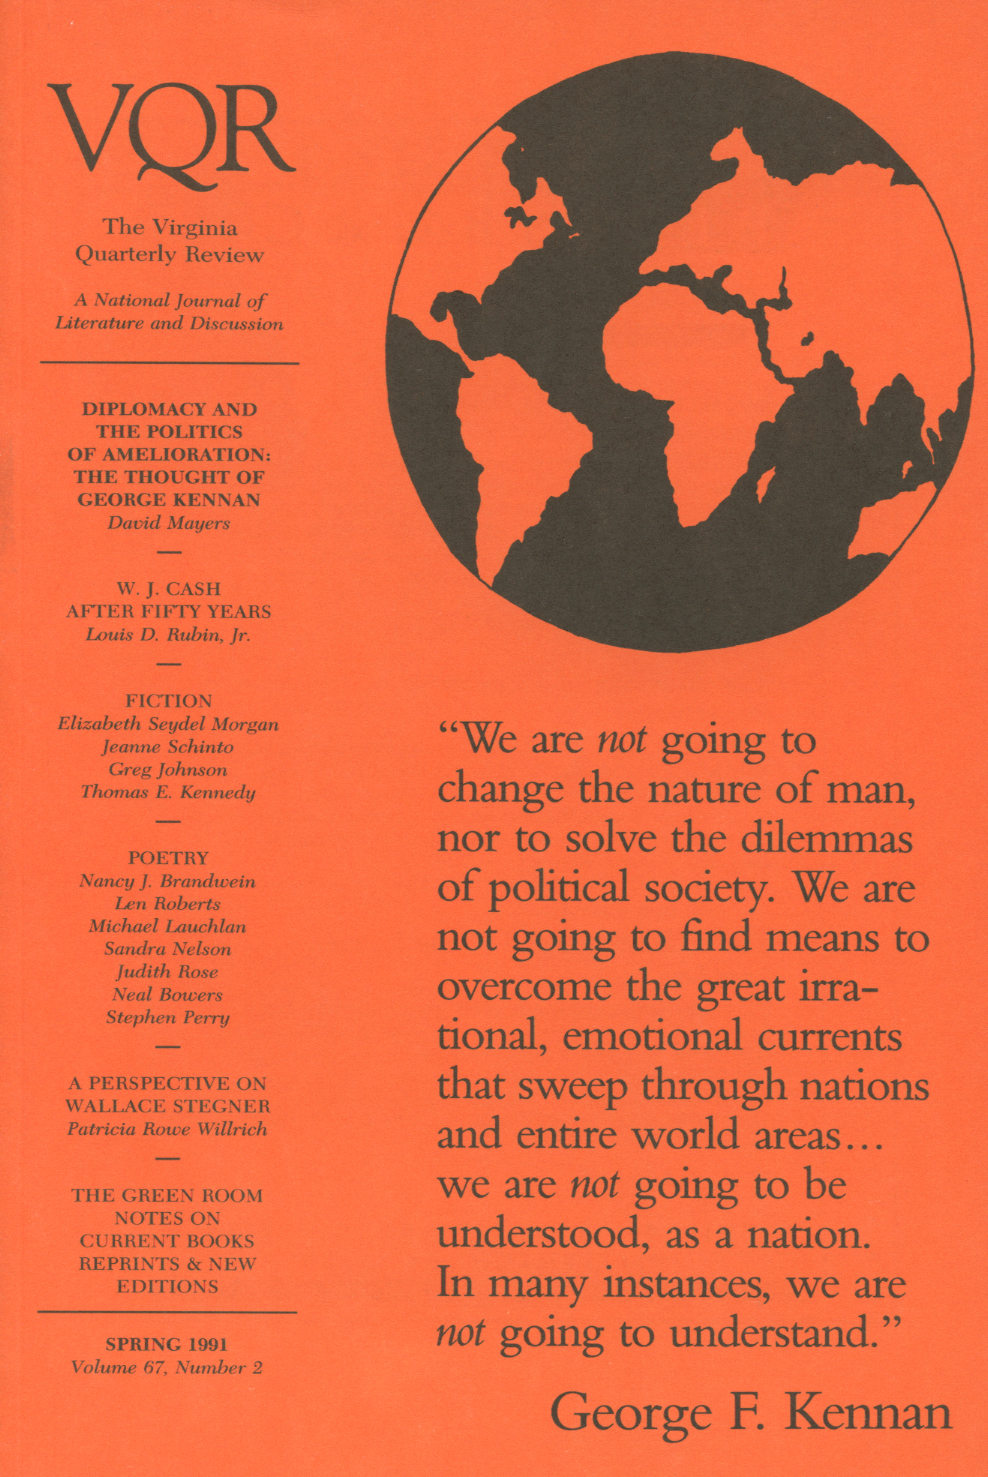 Virginia Quarterly Review, Spring 1991 cover